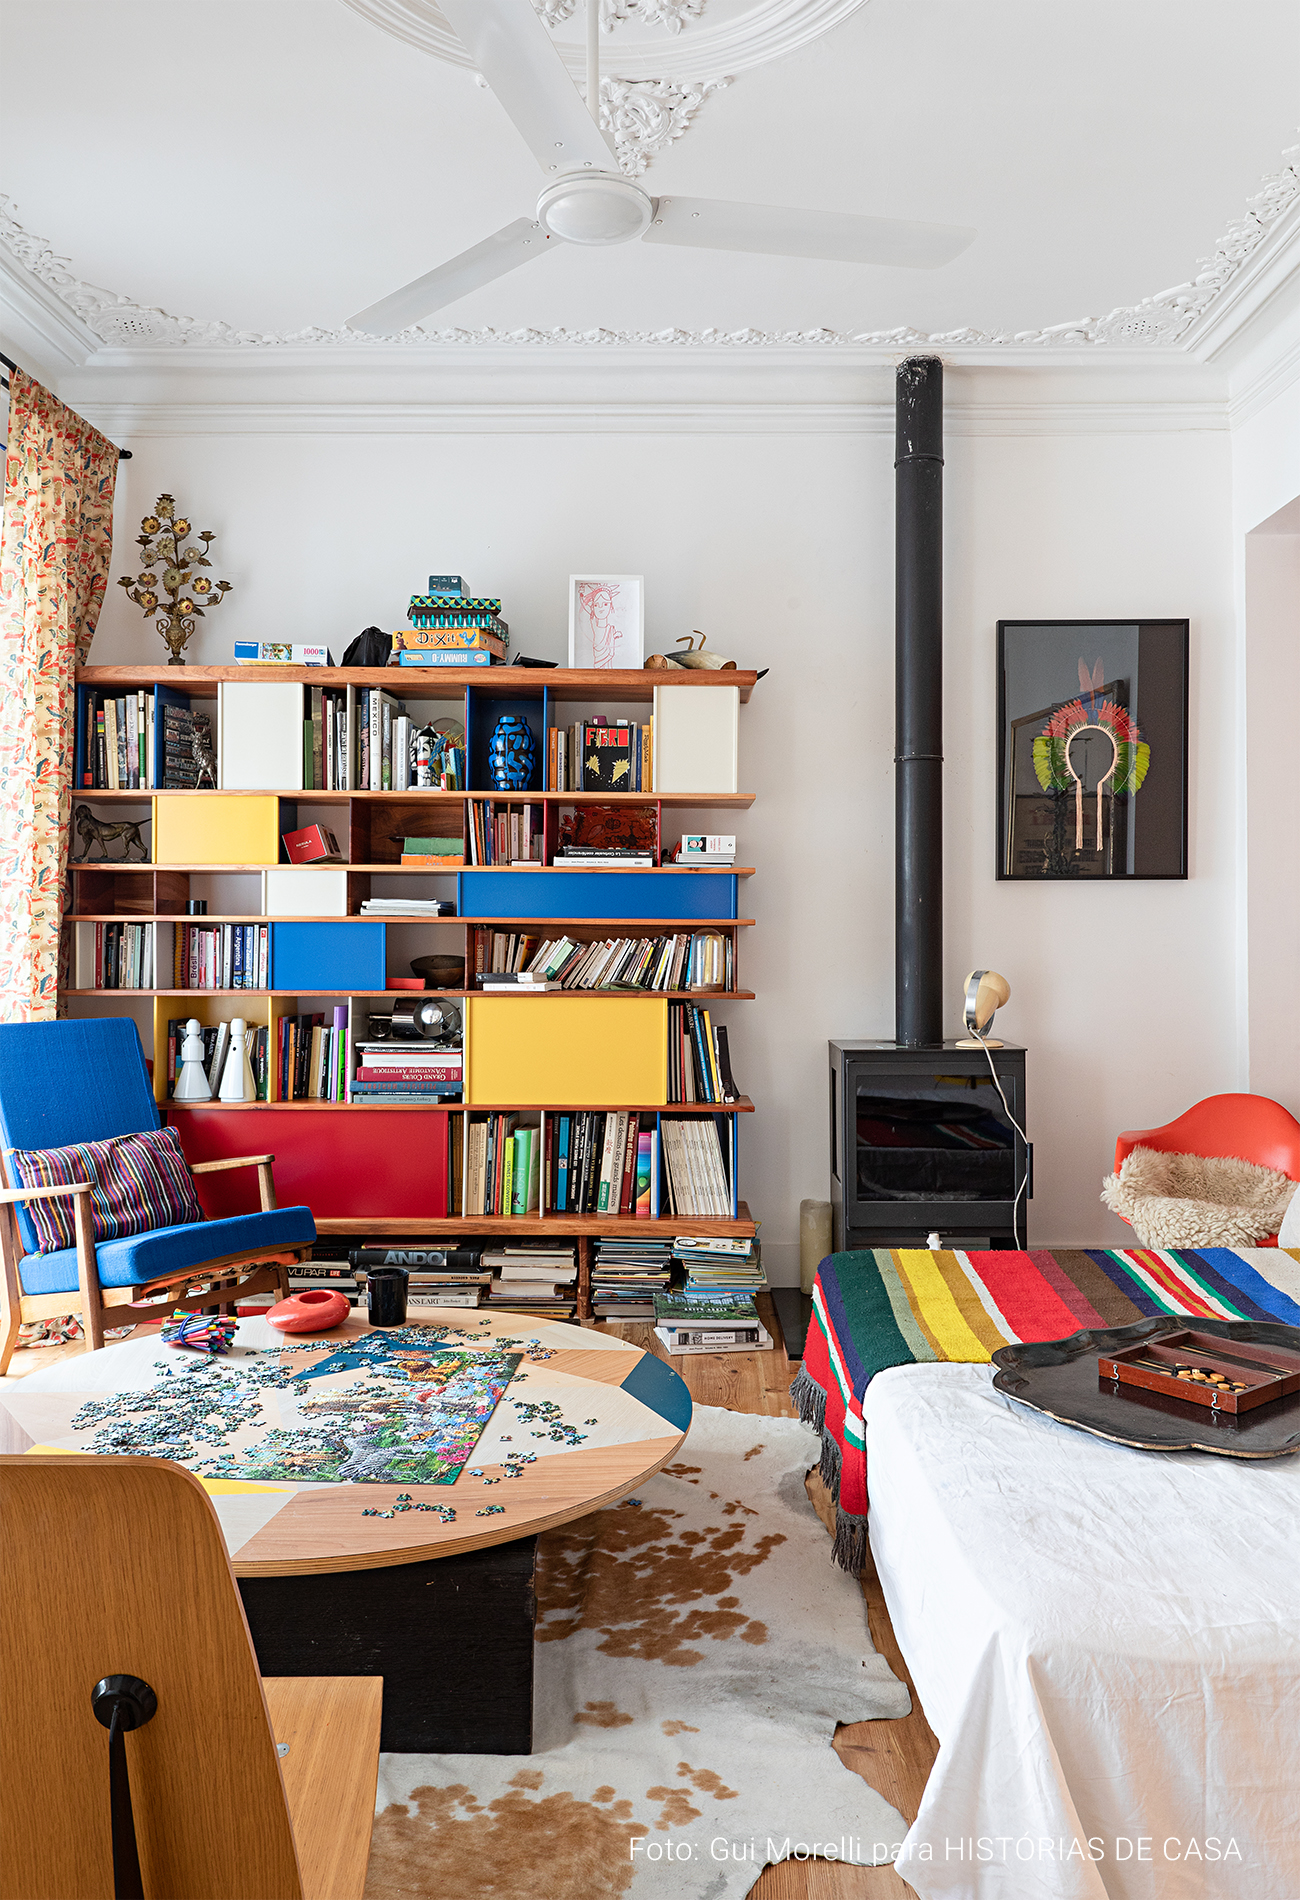 Apartamento em Portugal com decoração colorida e uso criativo dos móveis e objetos